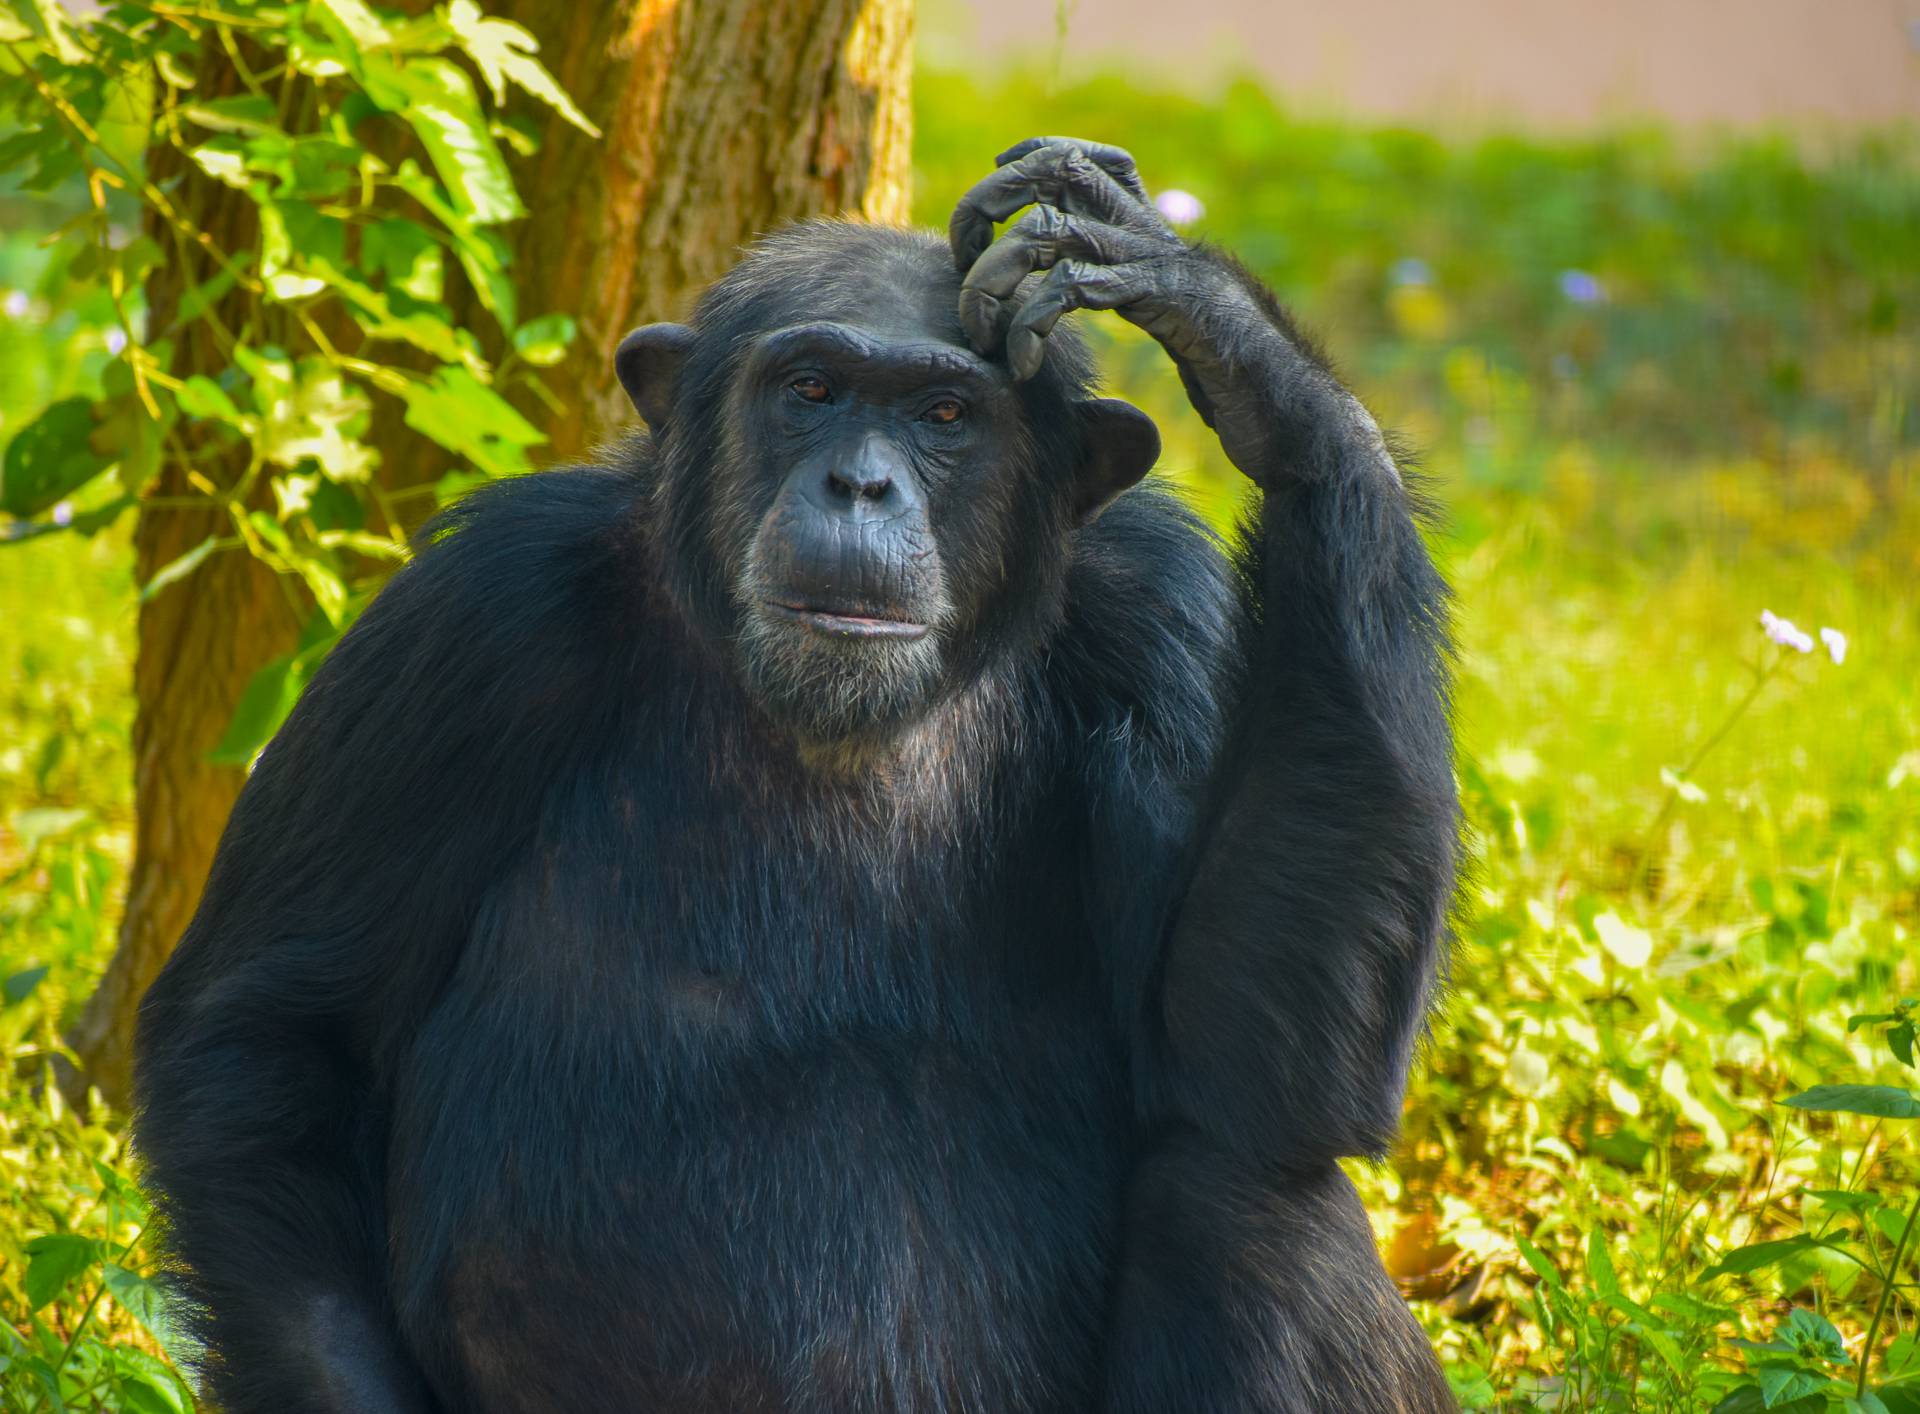 Čimpanze se rasplesale: Glasne su i ljuljaju se u ritmu glazbe